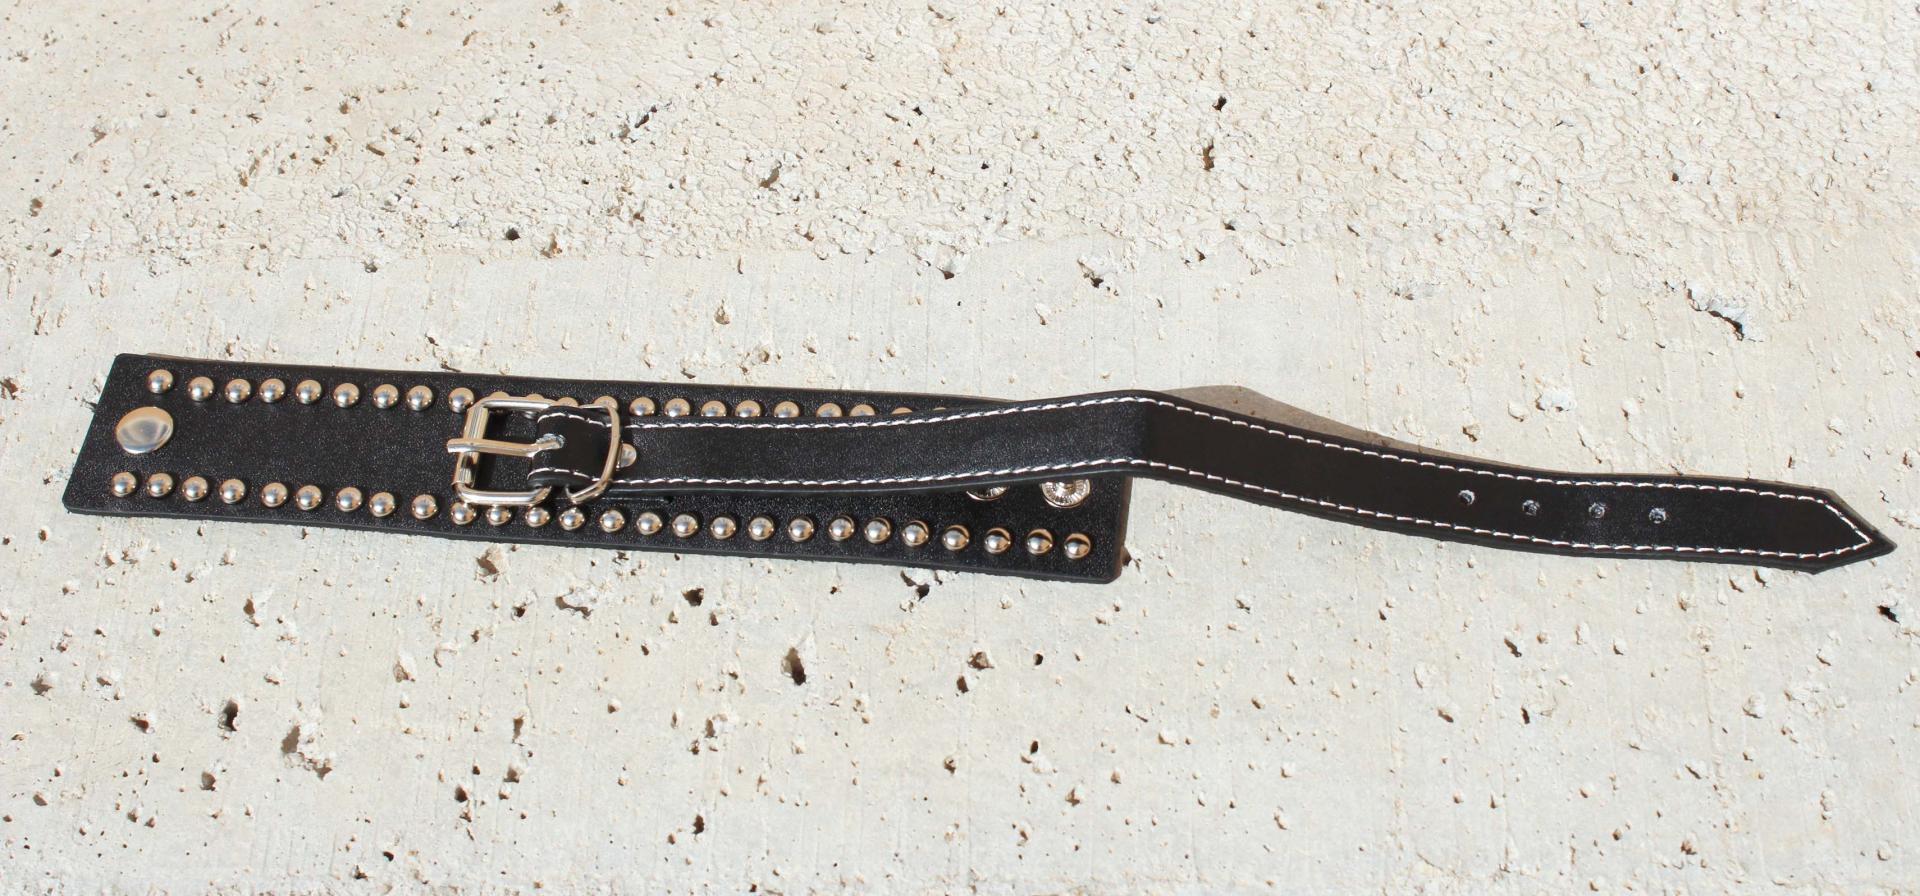 Wide Cuff Multi Stud Buckle Adjustable Leather Bracelet  